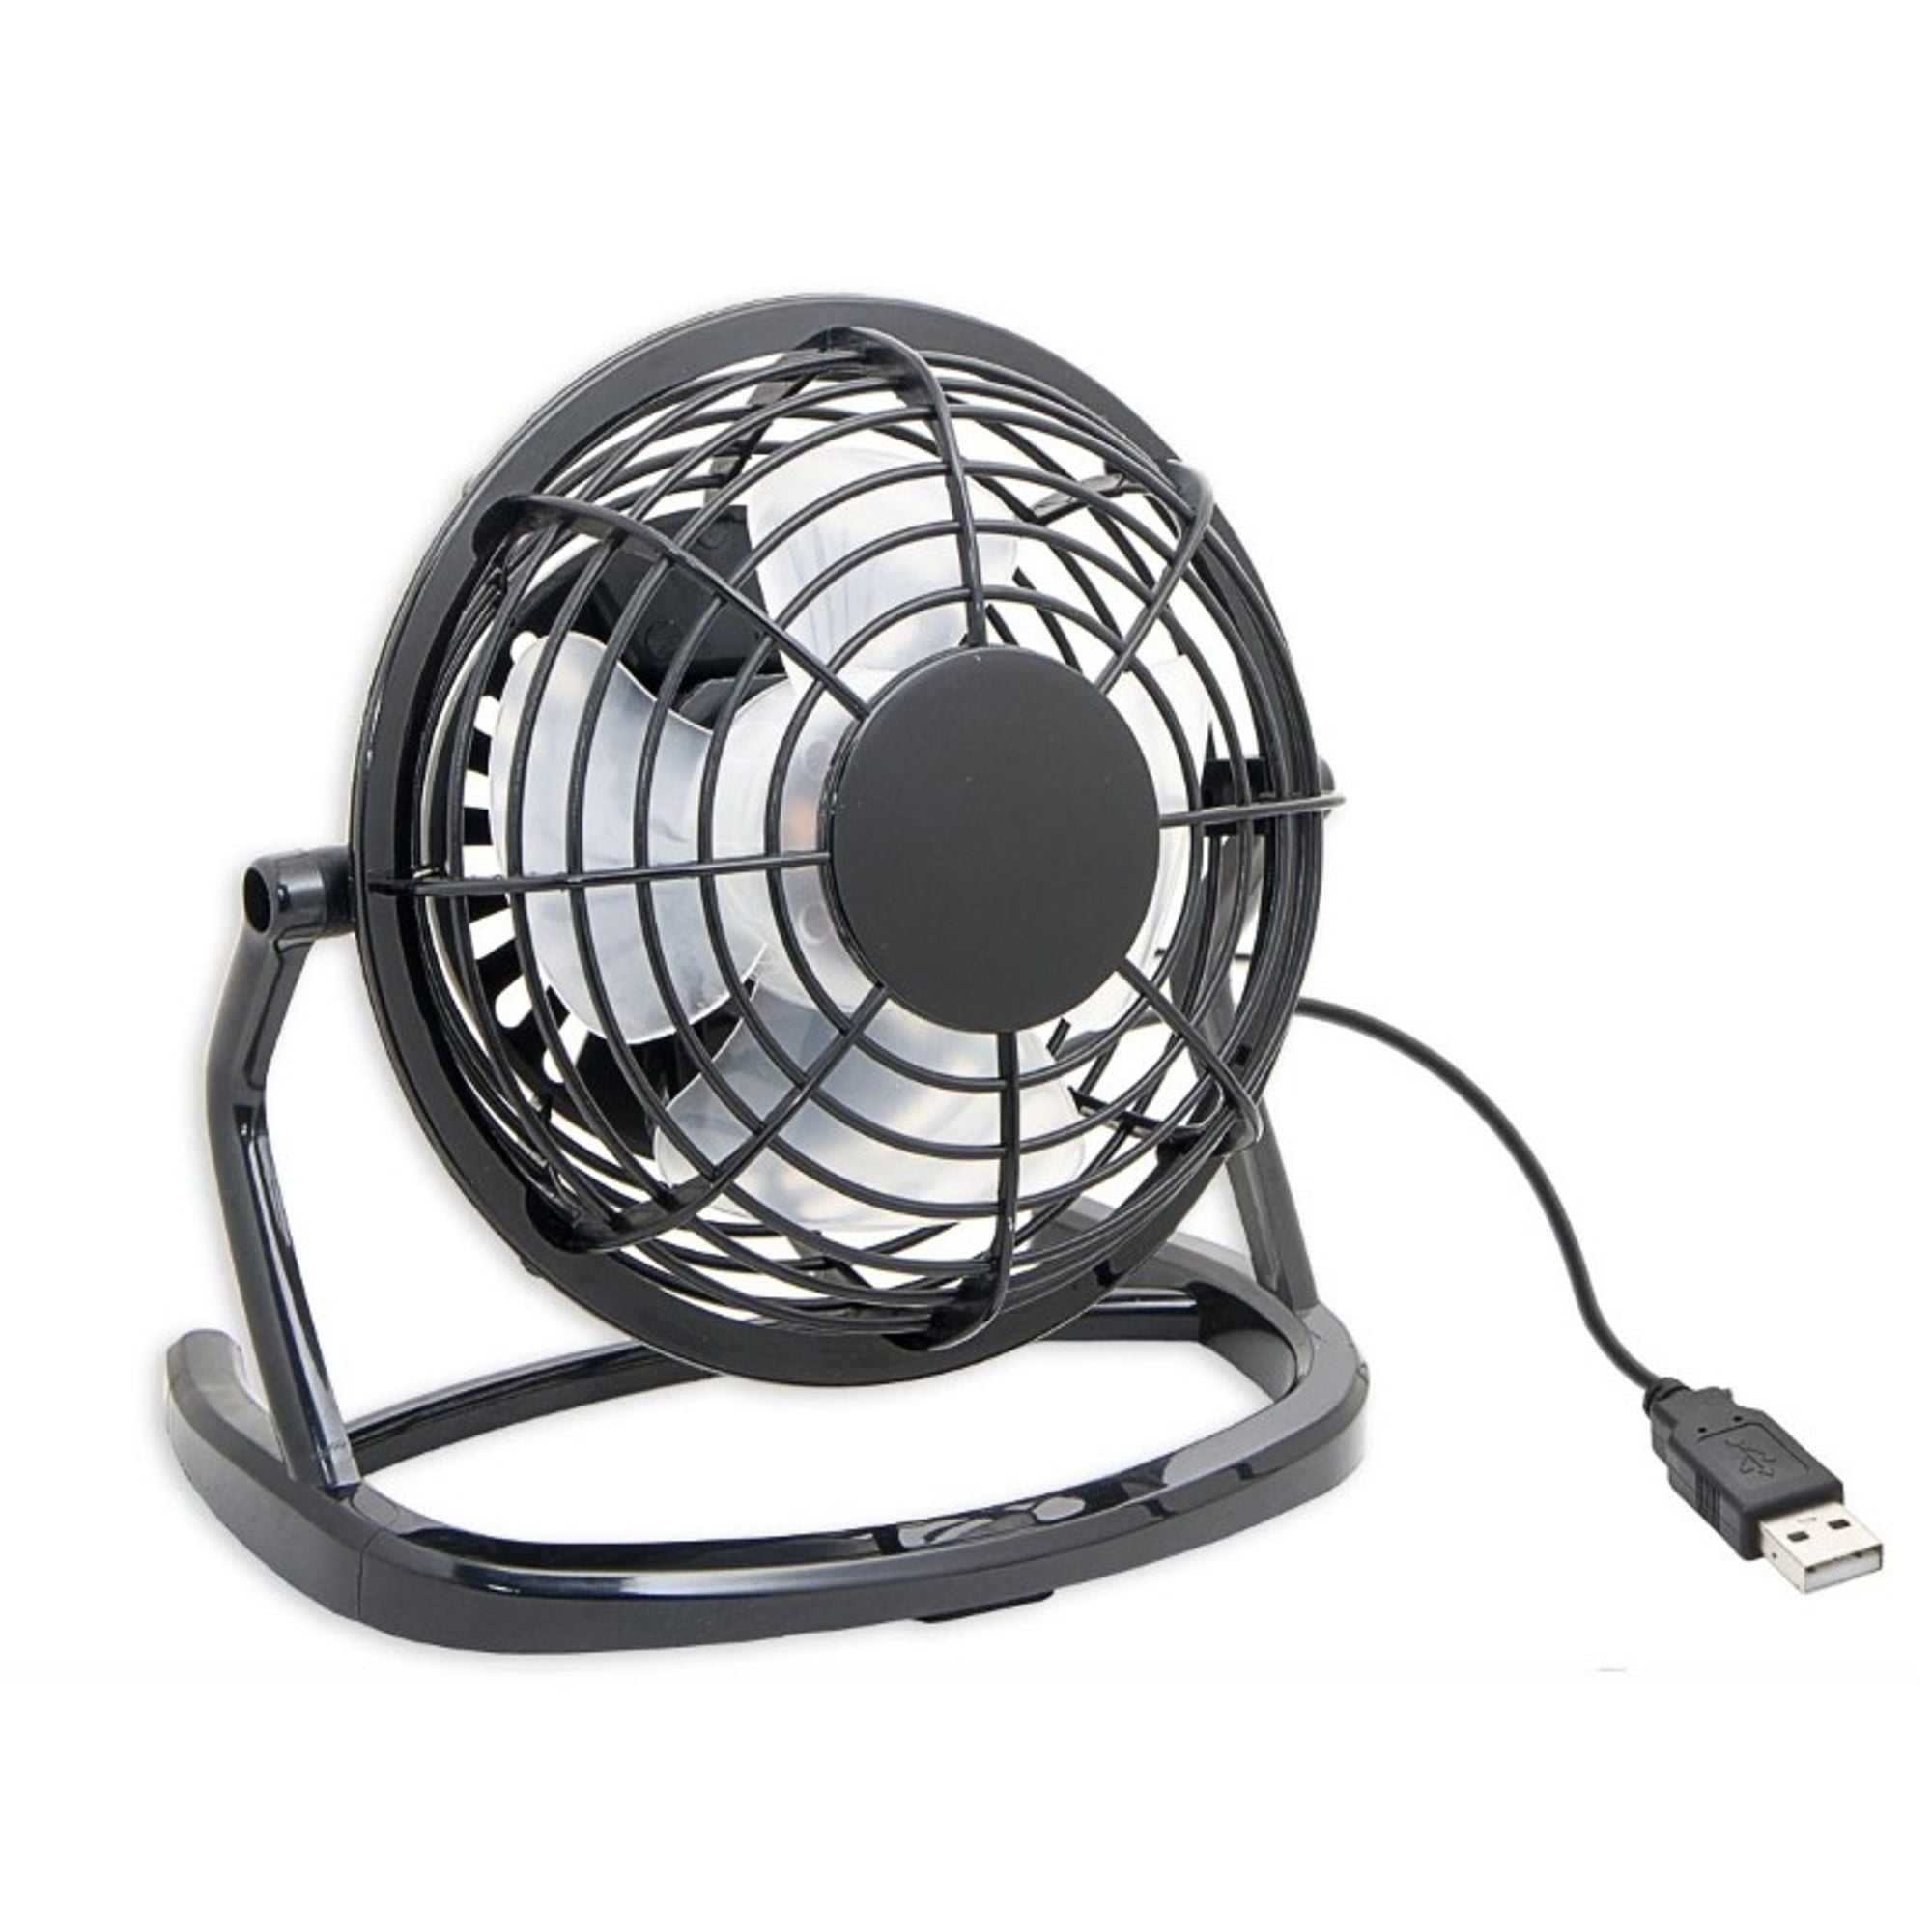 USB Desk Fan 4 Inch Mini Desk Fan with USB Cable Portable Personal Fan